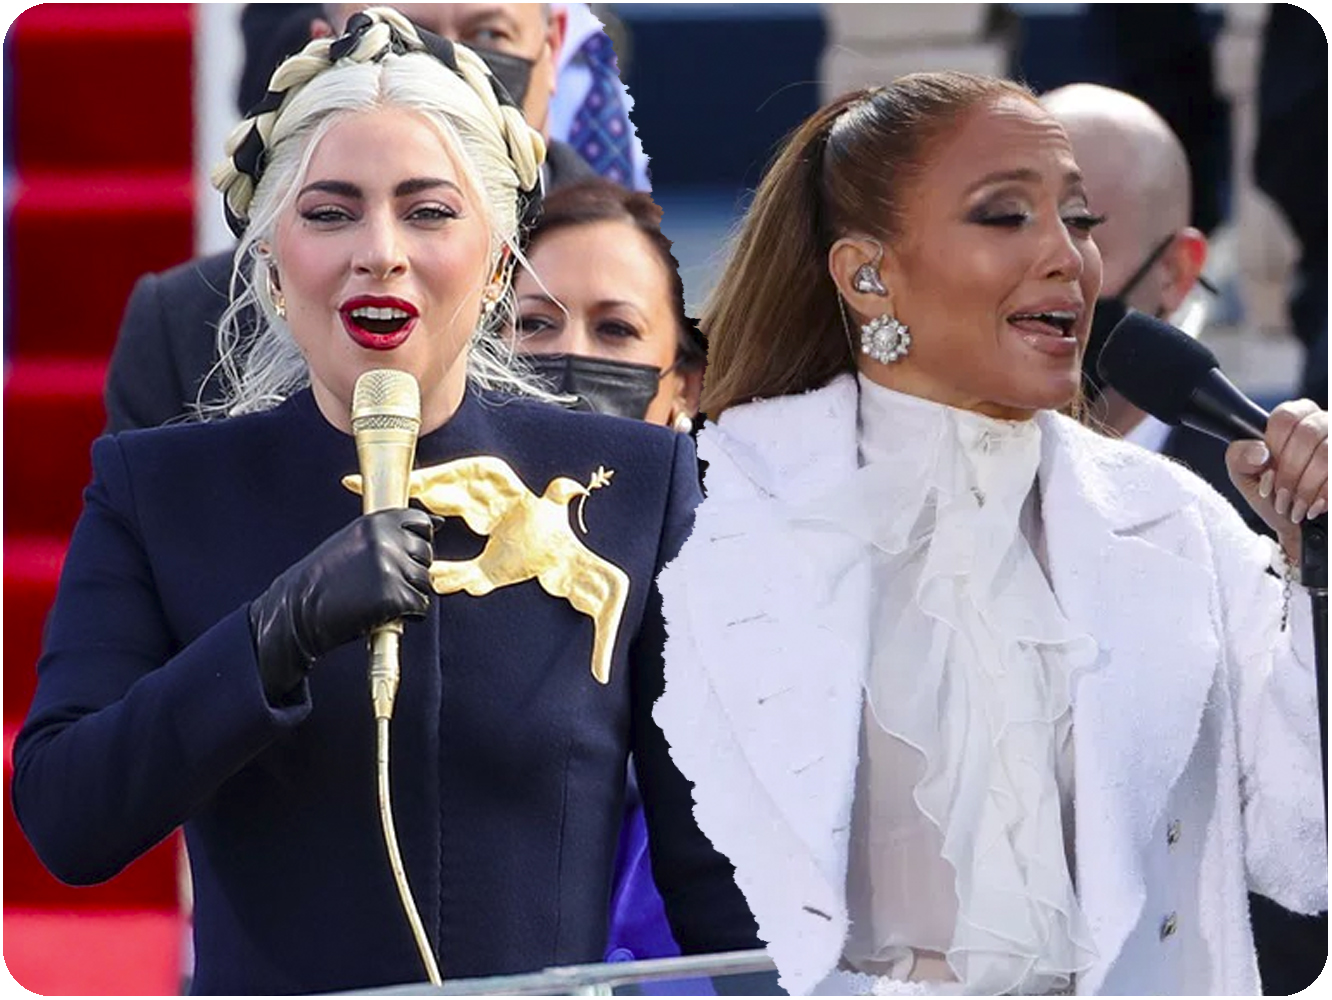  Lady Gaga y Jennifer Lopez cantaron durante el acto de investidura de Joe Biden